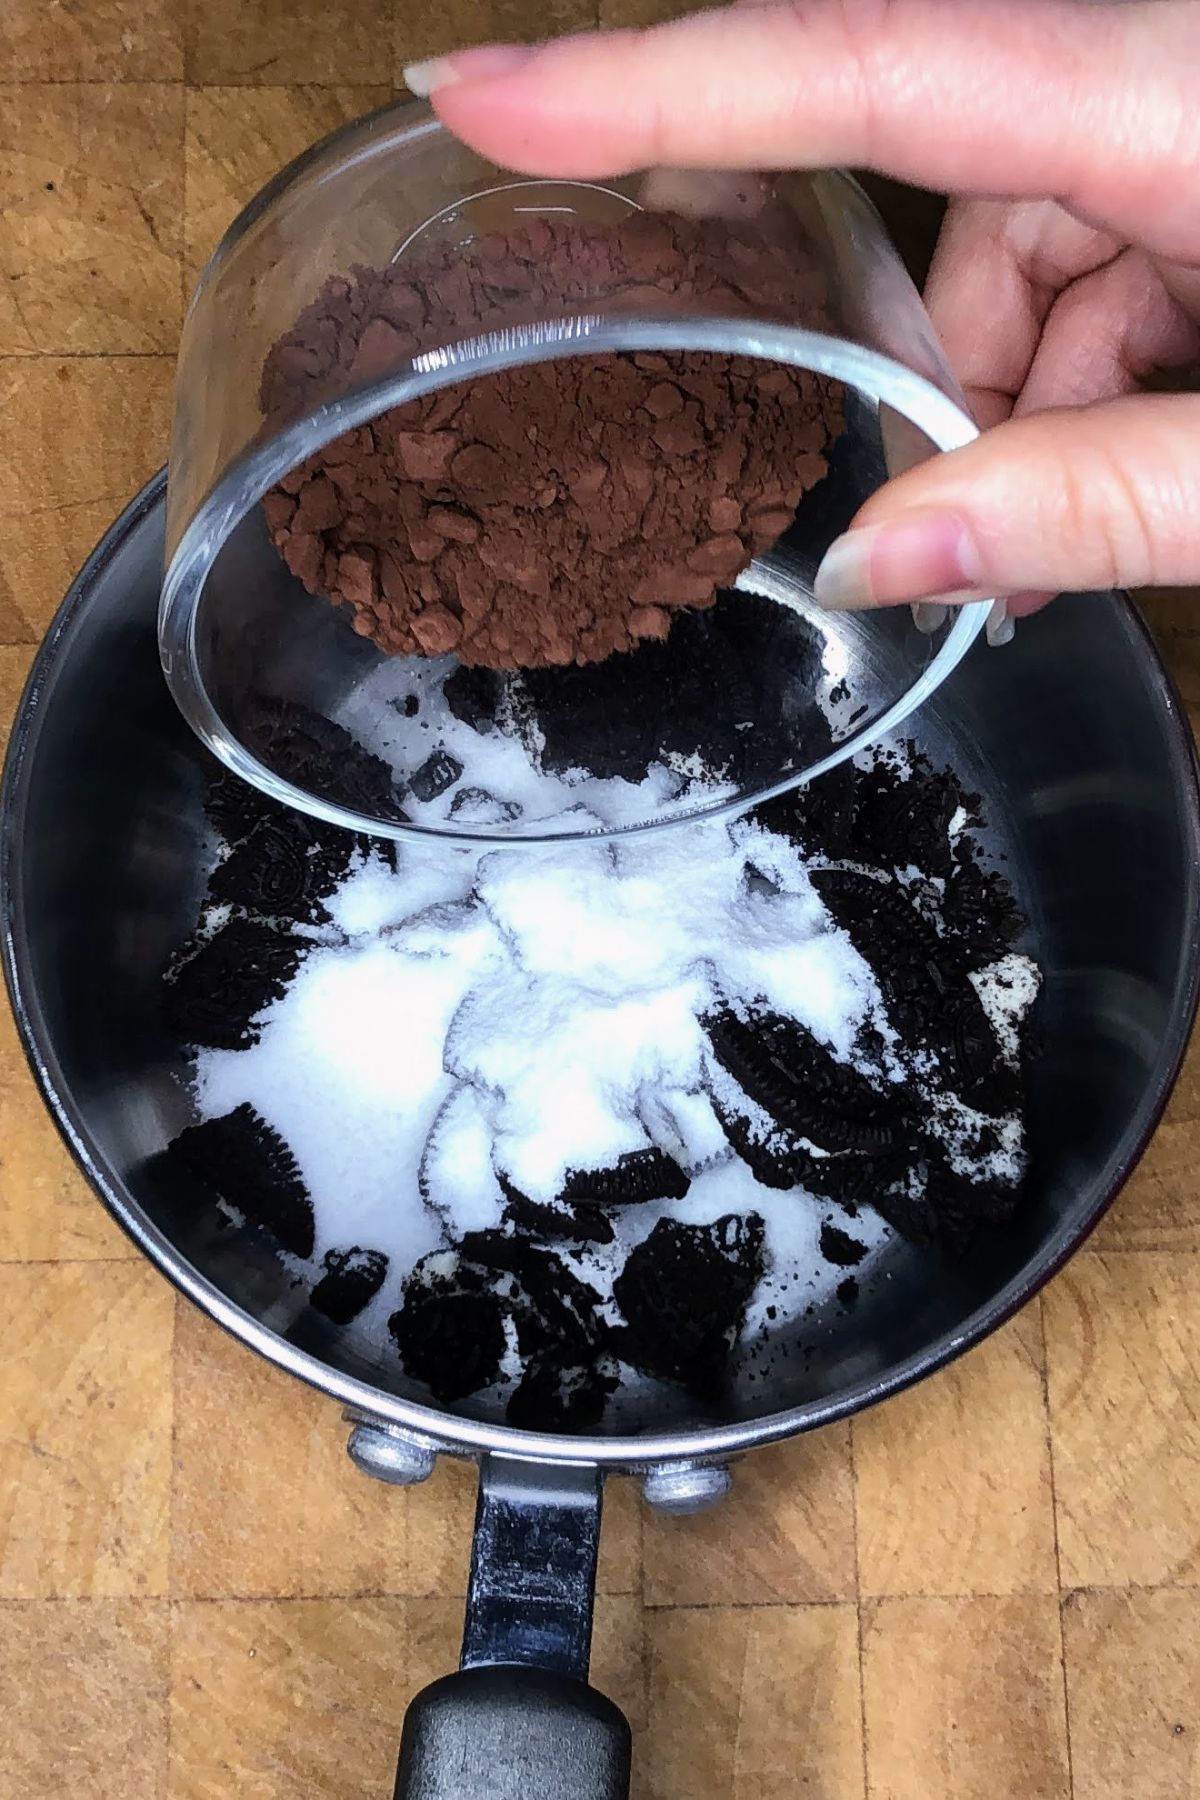 Pouring cocoa powder into a pot.